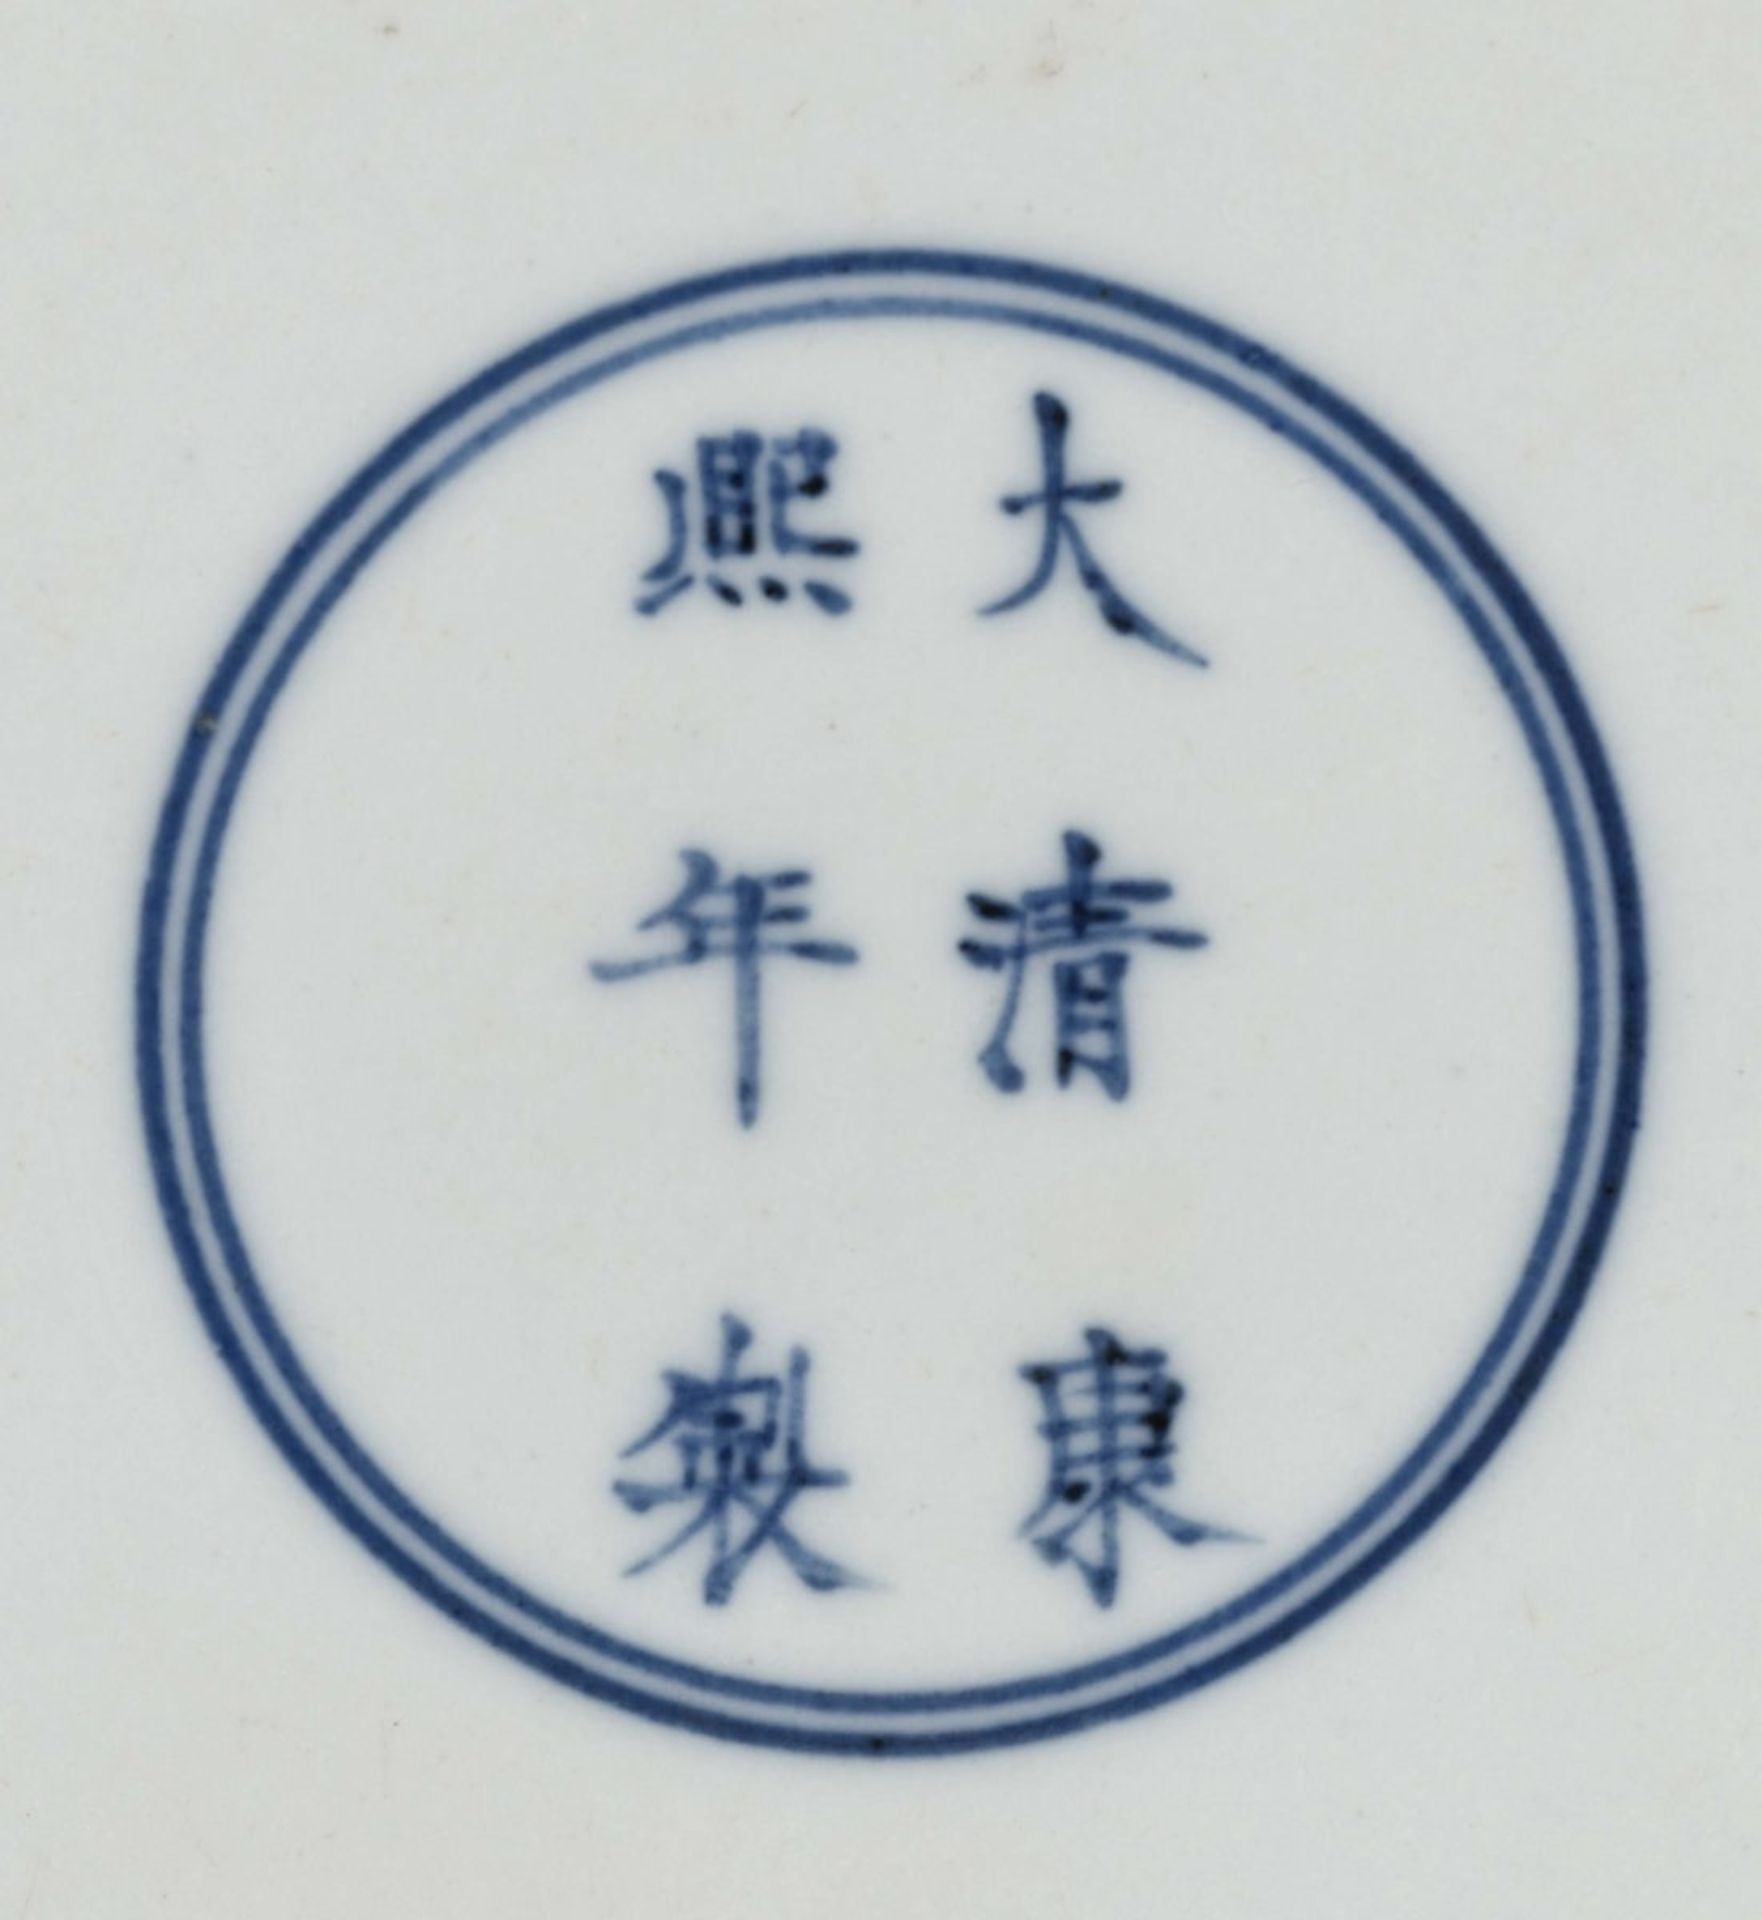 Schale China Porzellan. Bunter Drachendekor im Stil der "Famille verte". Blaue Sechszeichenmarke - Image 3 of 3